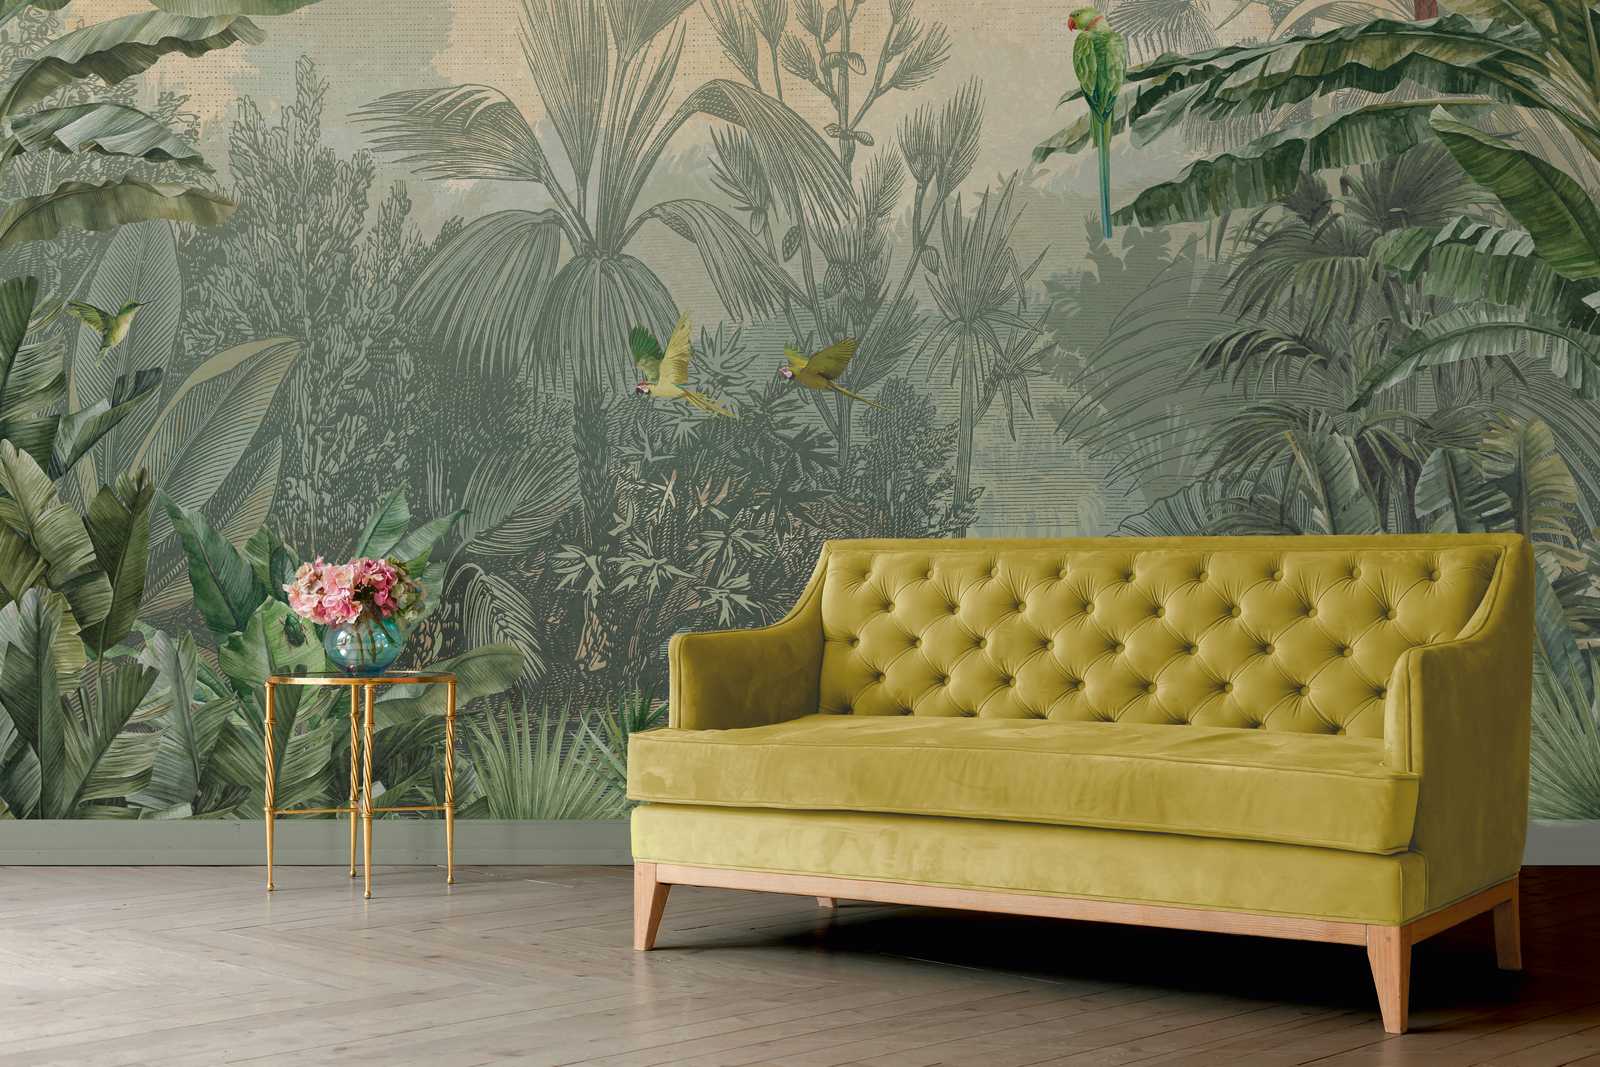             Papel pintado de estilo dibujo de palmeras y loros en la selva verde
        